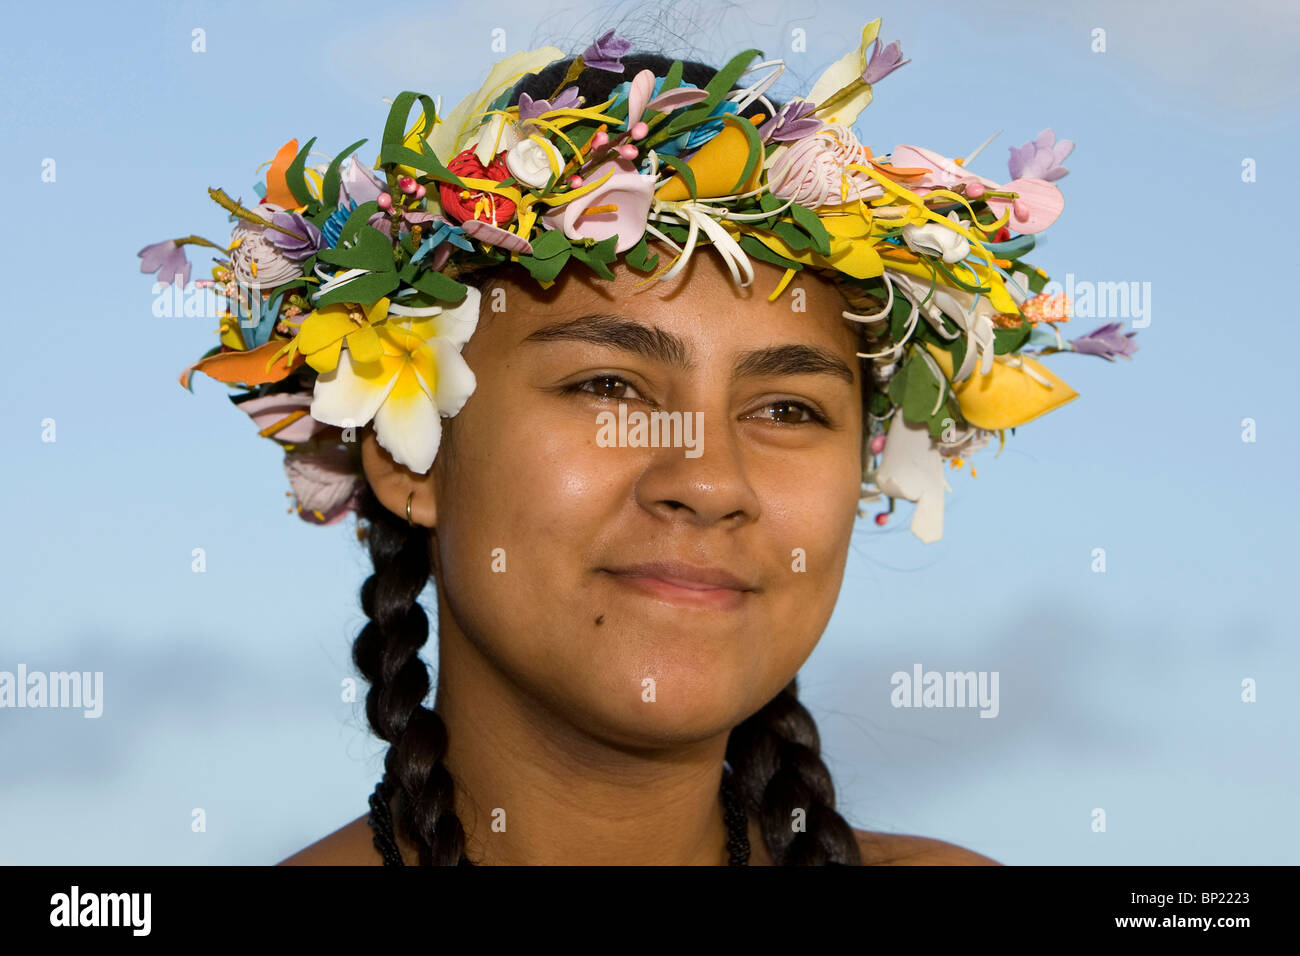 Local Girl of Tuamotus, Rangiroa, French Polynesia Stock Photo